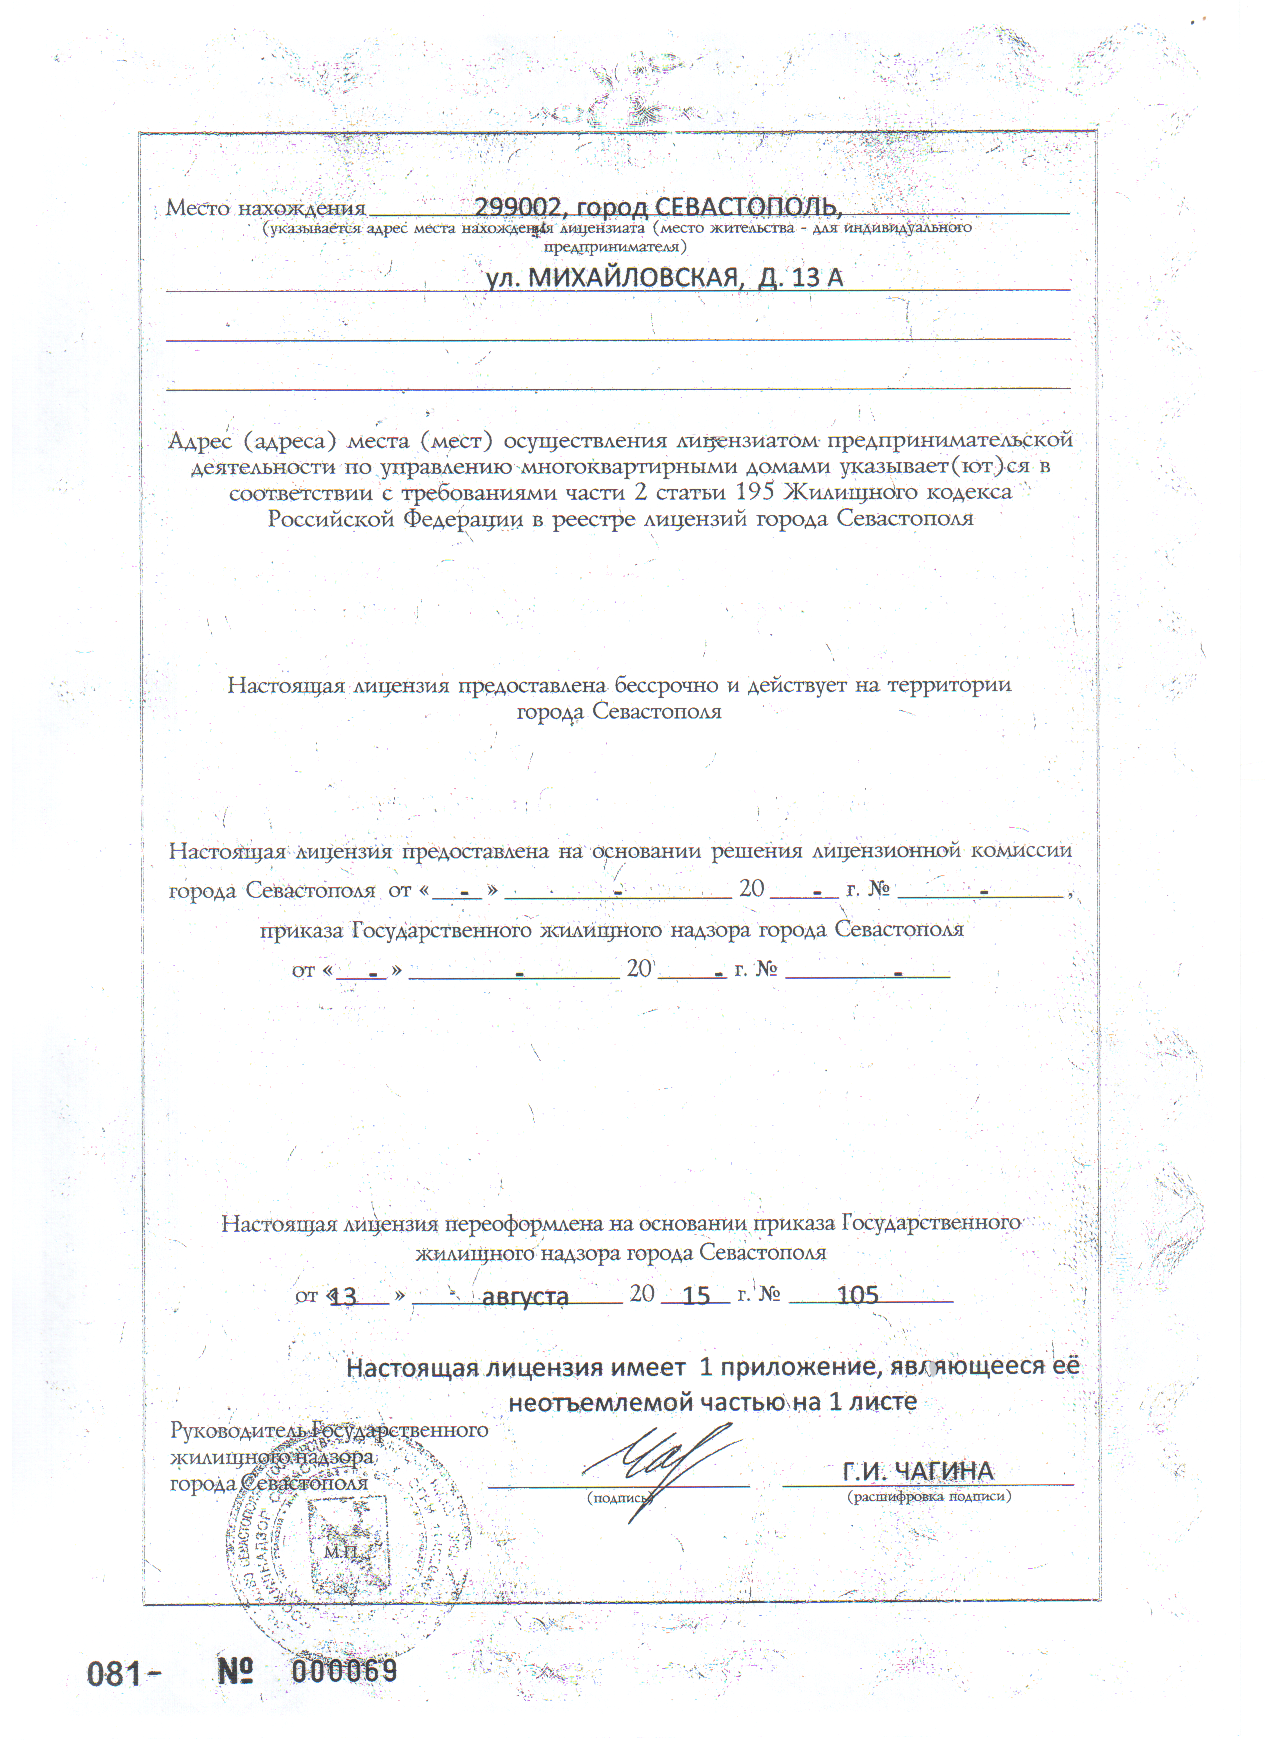 Лицензия №56 от 13.08.2015 г. с приложением №1